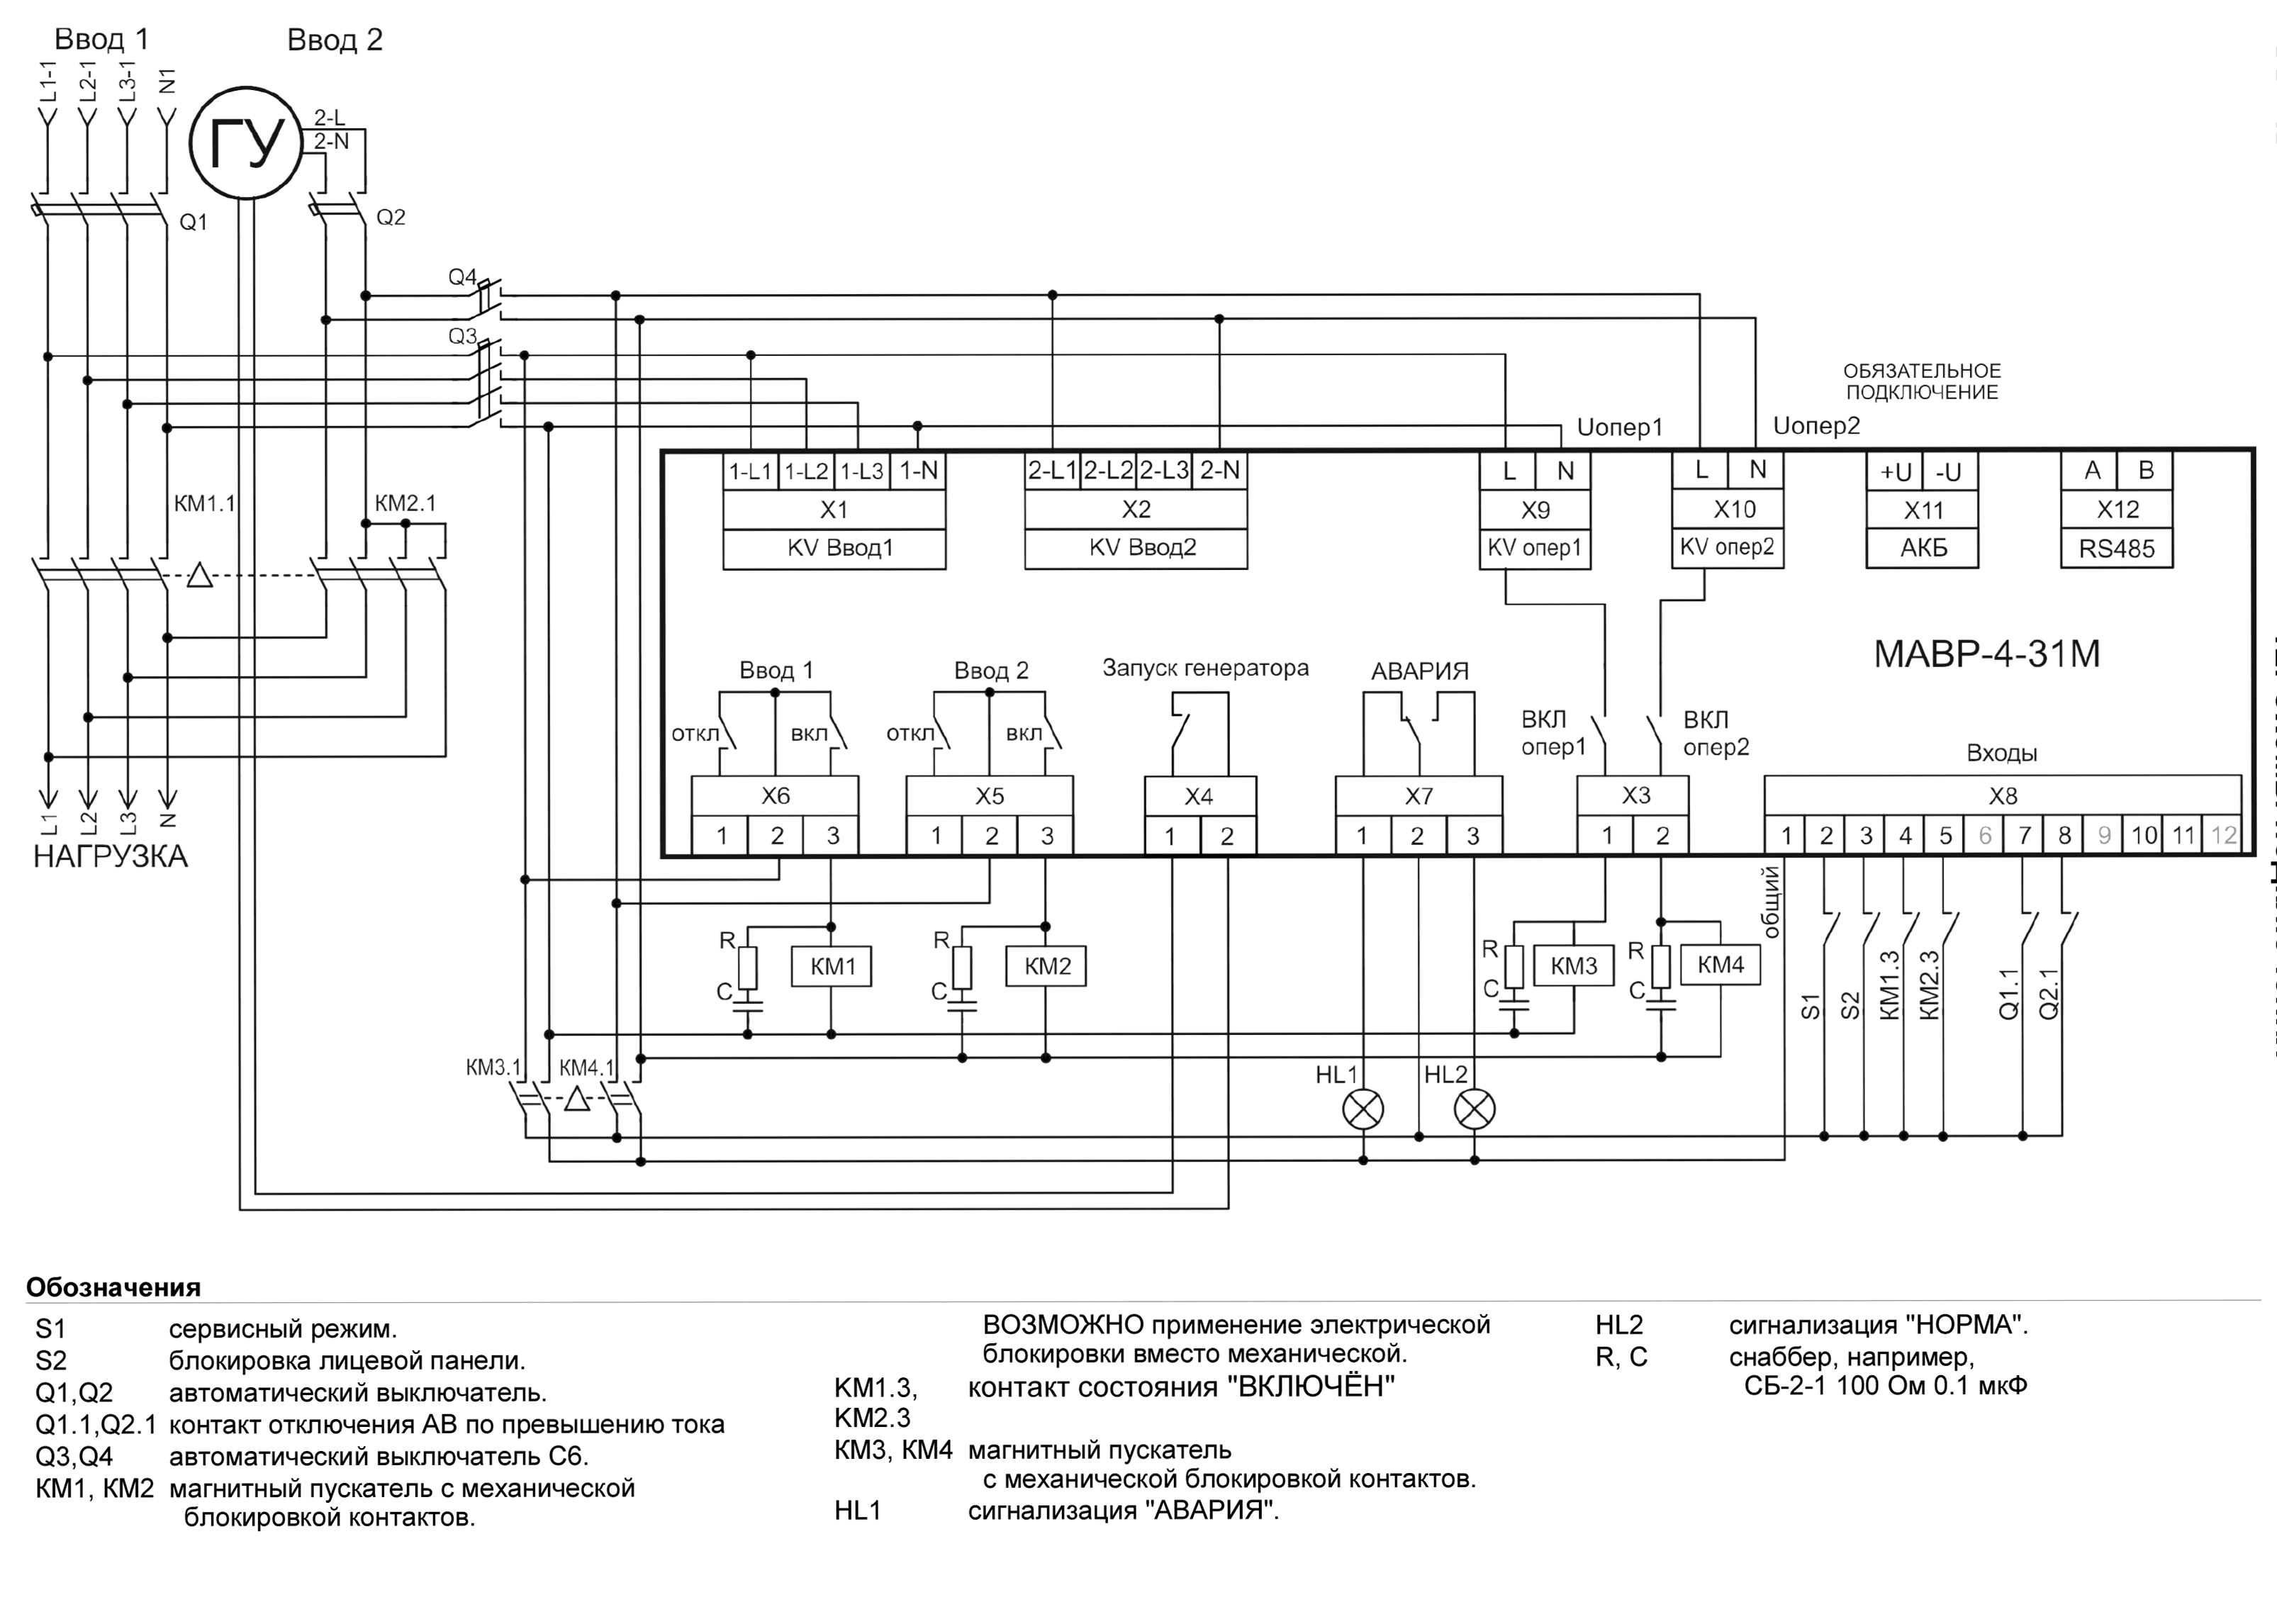 Схема АВР на магнитных пускателях 3-х фазный ввод и 1-фазный генератор